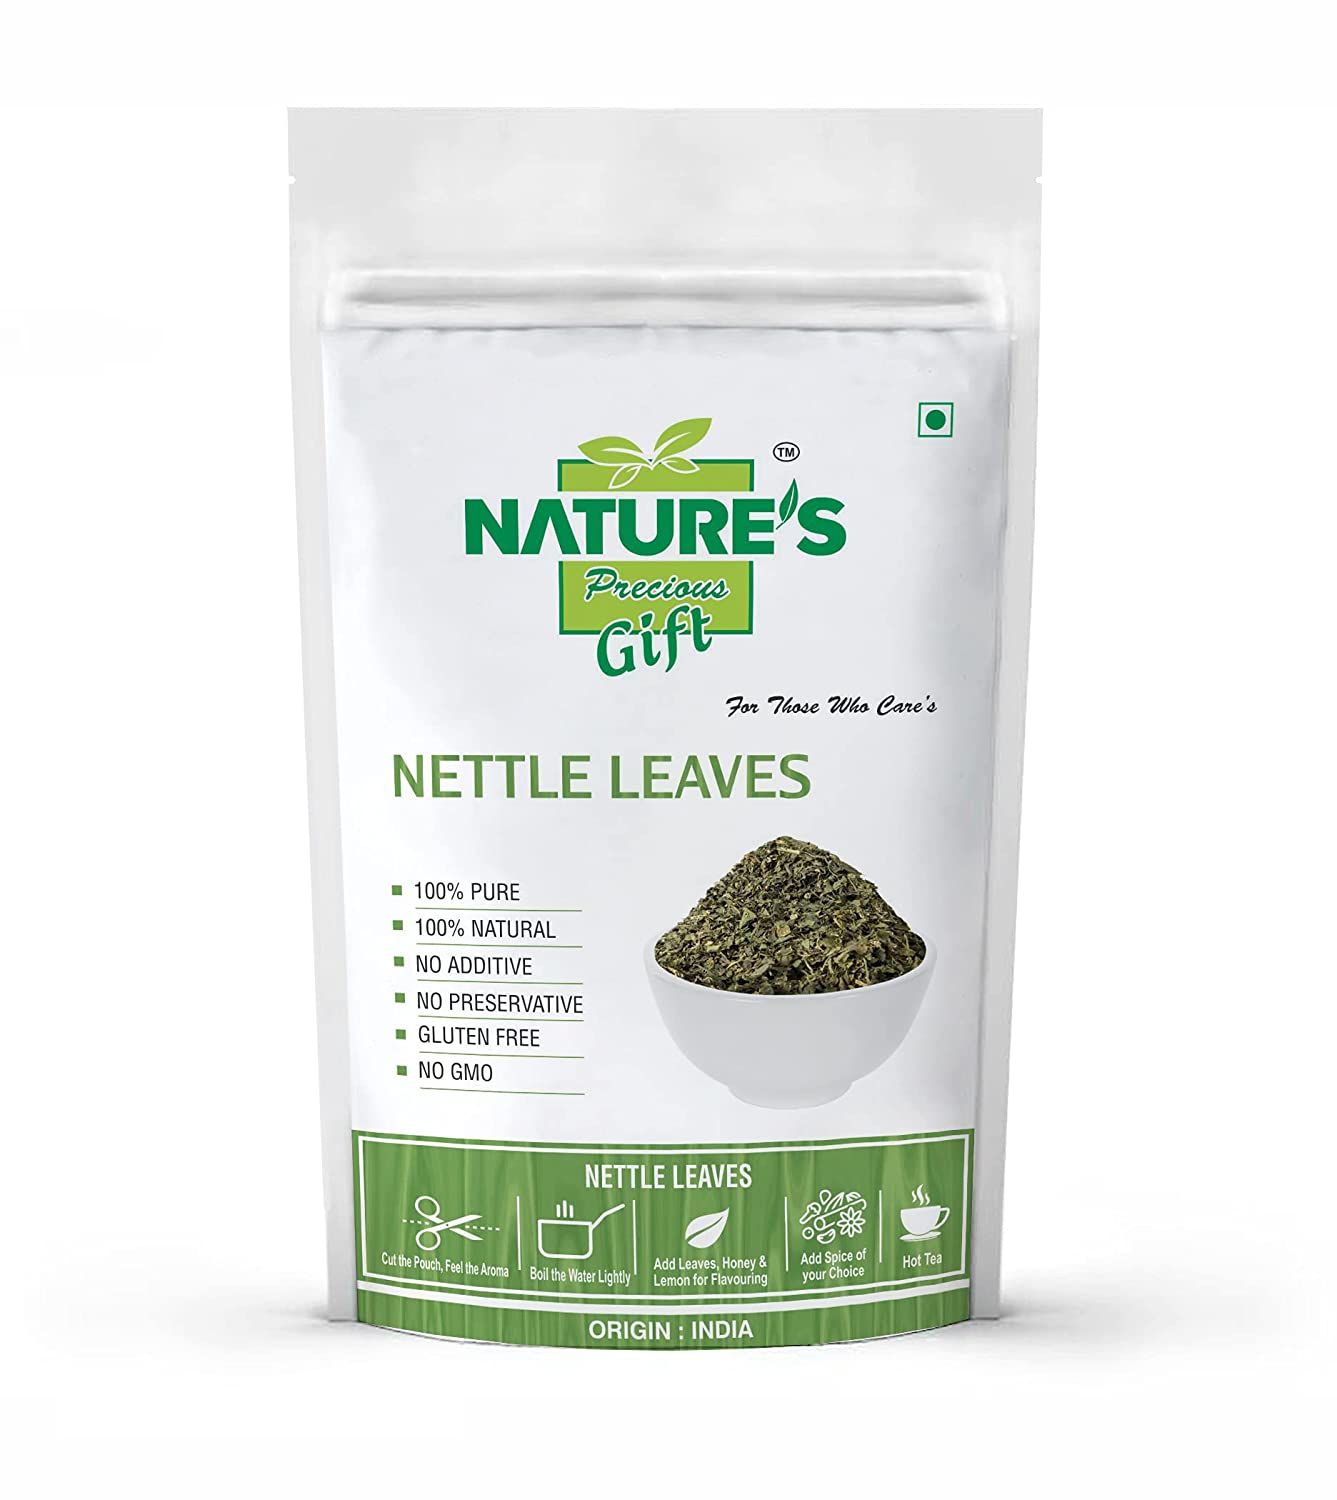 Nature's Gift Nettle Leaves Tea Image